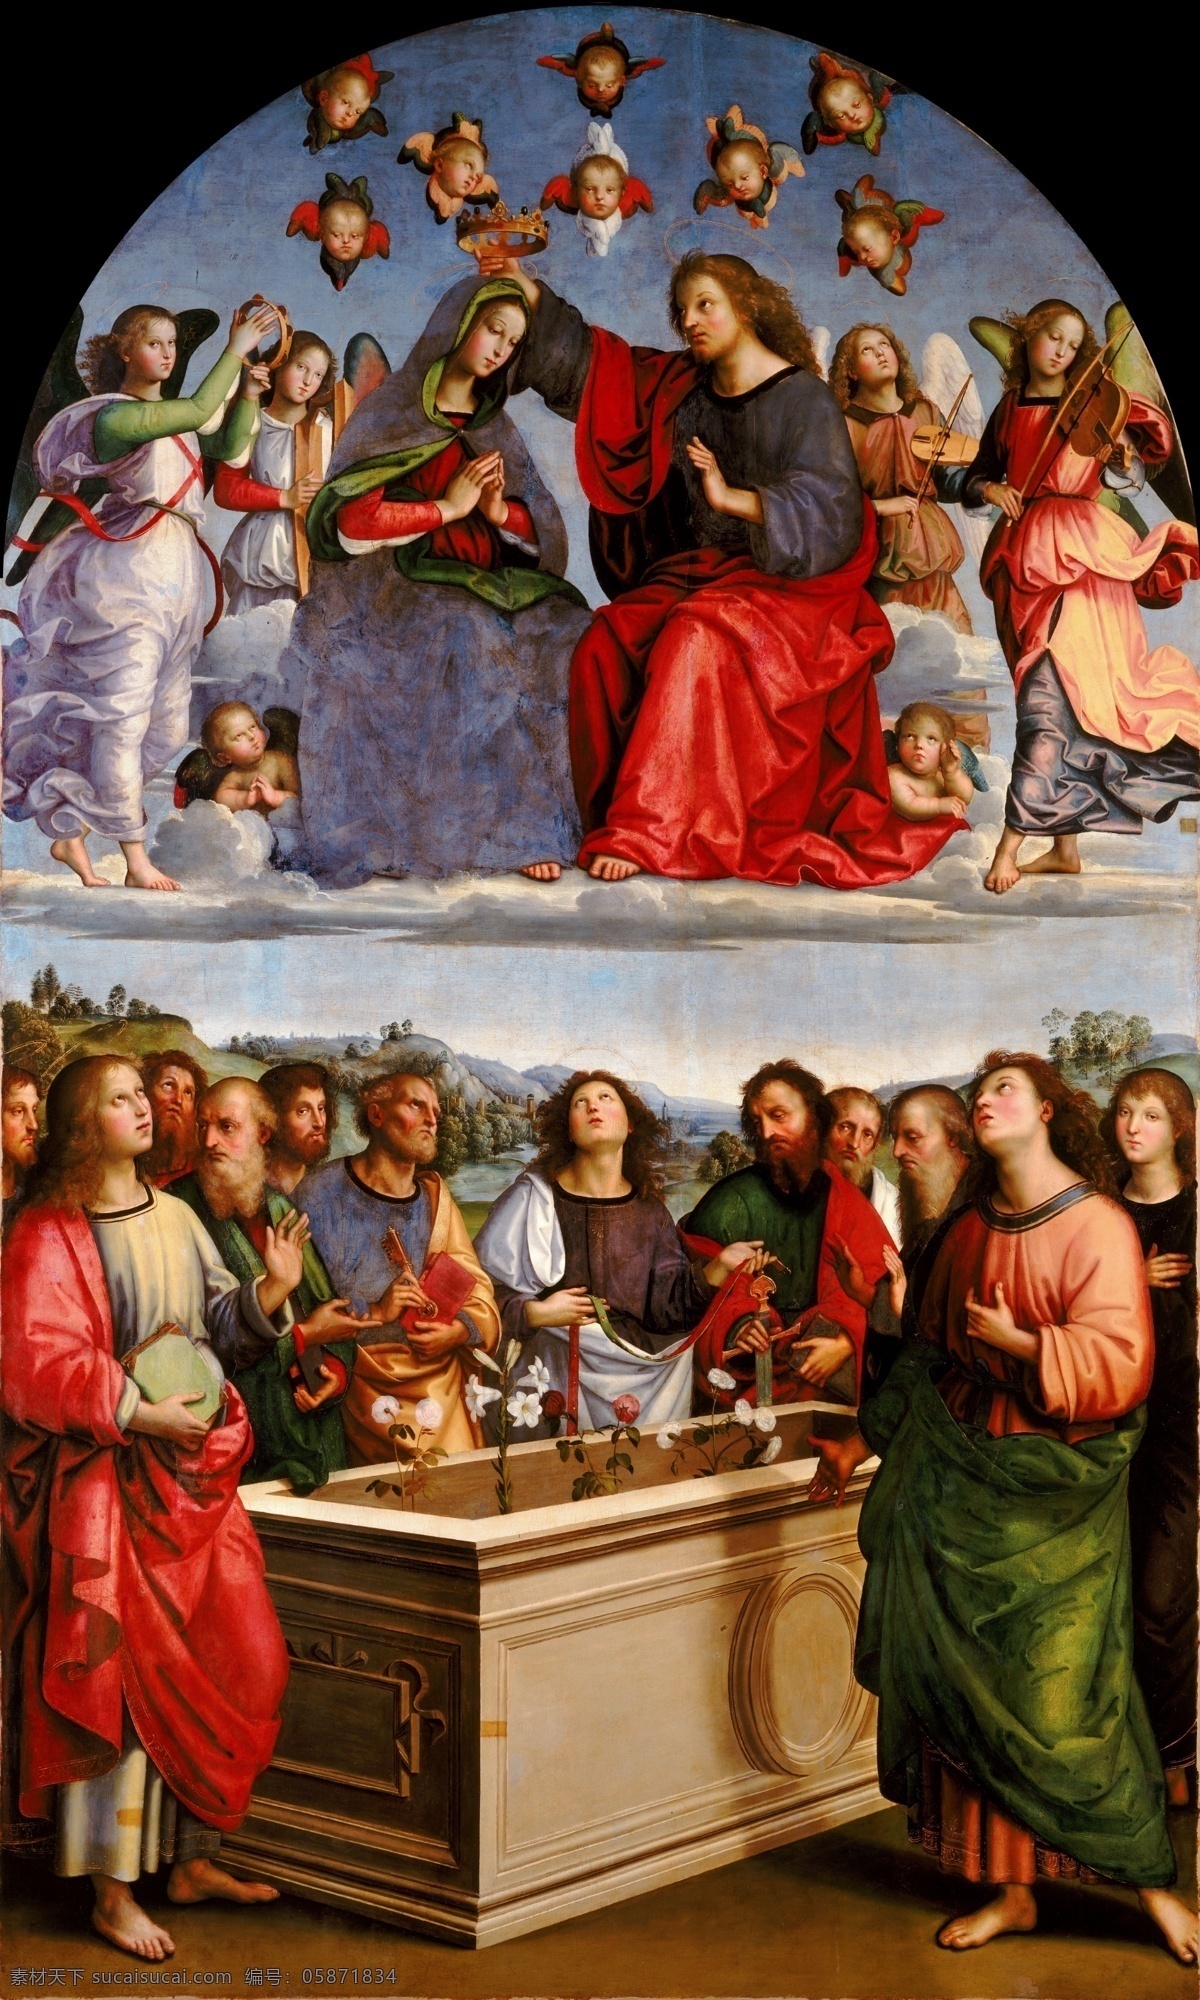 拉斐尔油画 文艺复兴时期 意大利画家 国家艺术馆 拉斐尔 宗教艺术 圣母 绘画书法 文化艺术 耶稣 古典油画